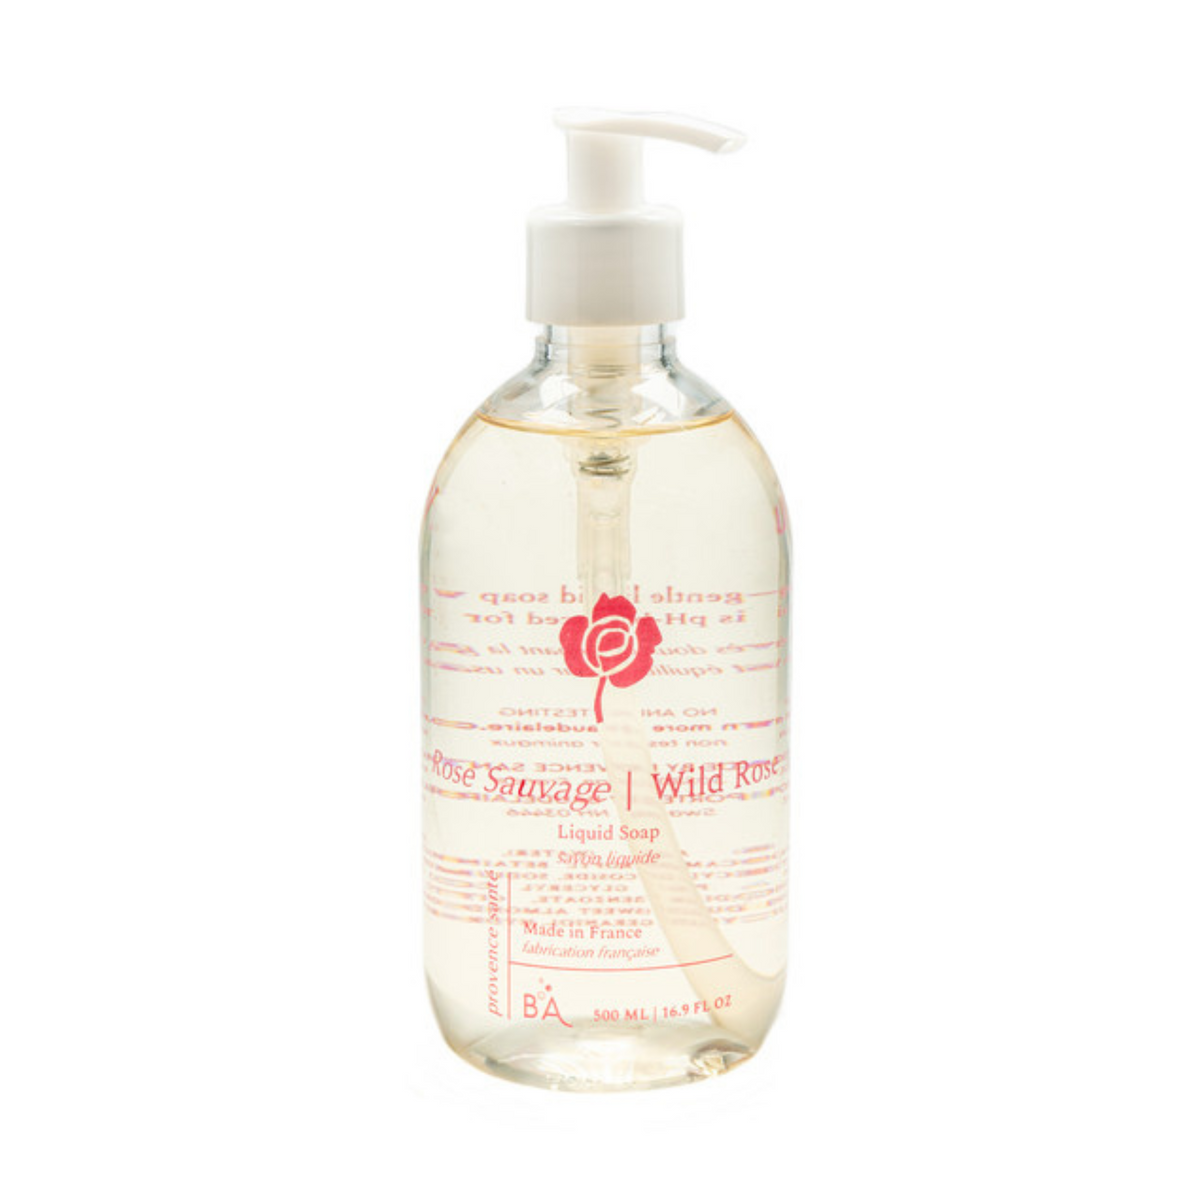 Primary image of Wild Rose Liquid Soap